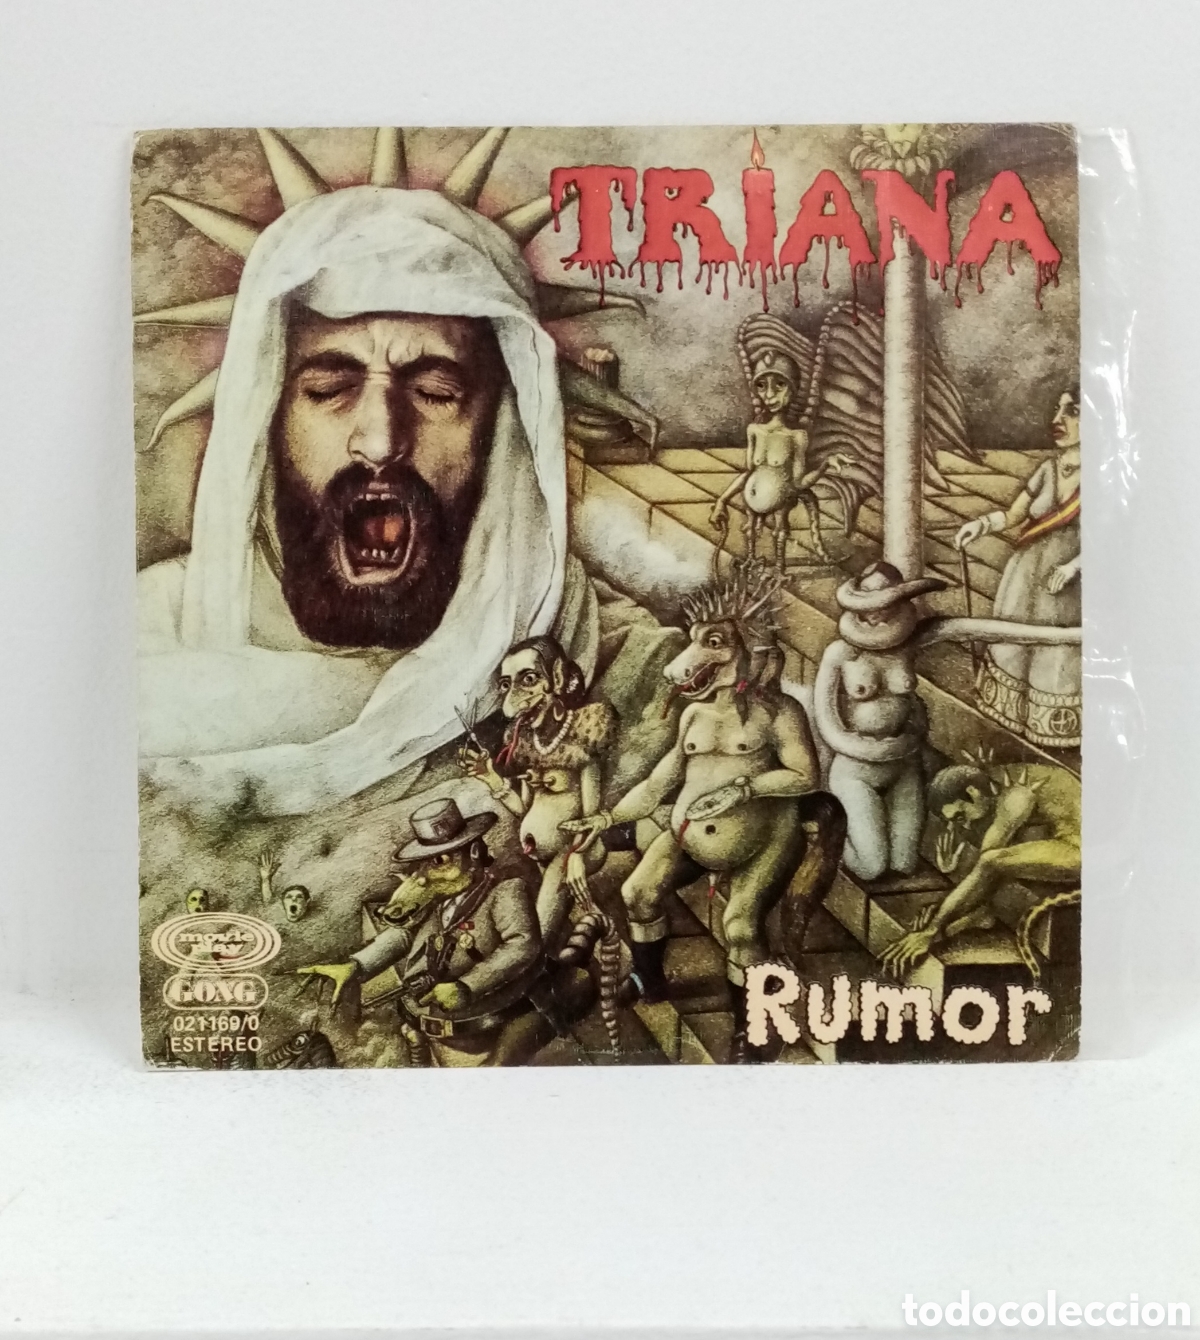 triana ”rumor / recuerdos de triana” single. or - Compra venta en  todocoleccion